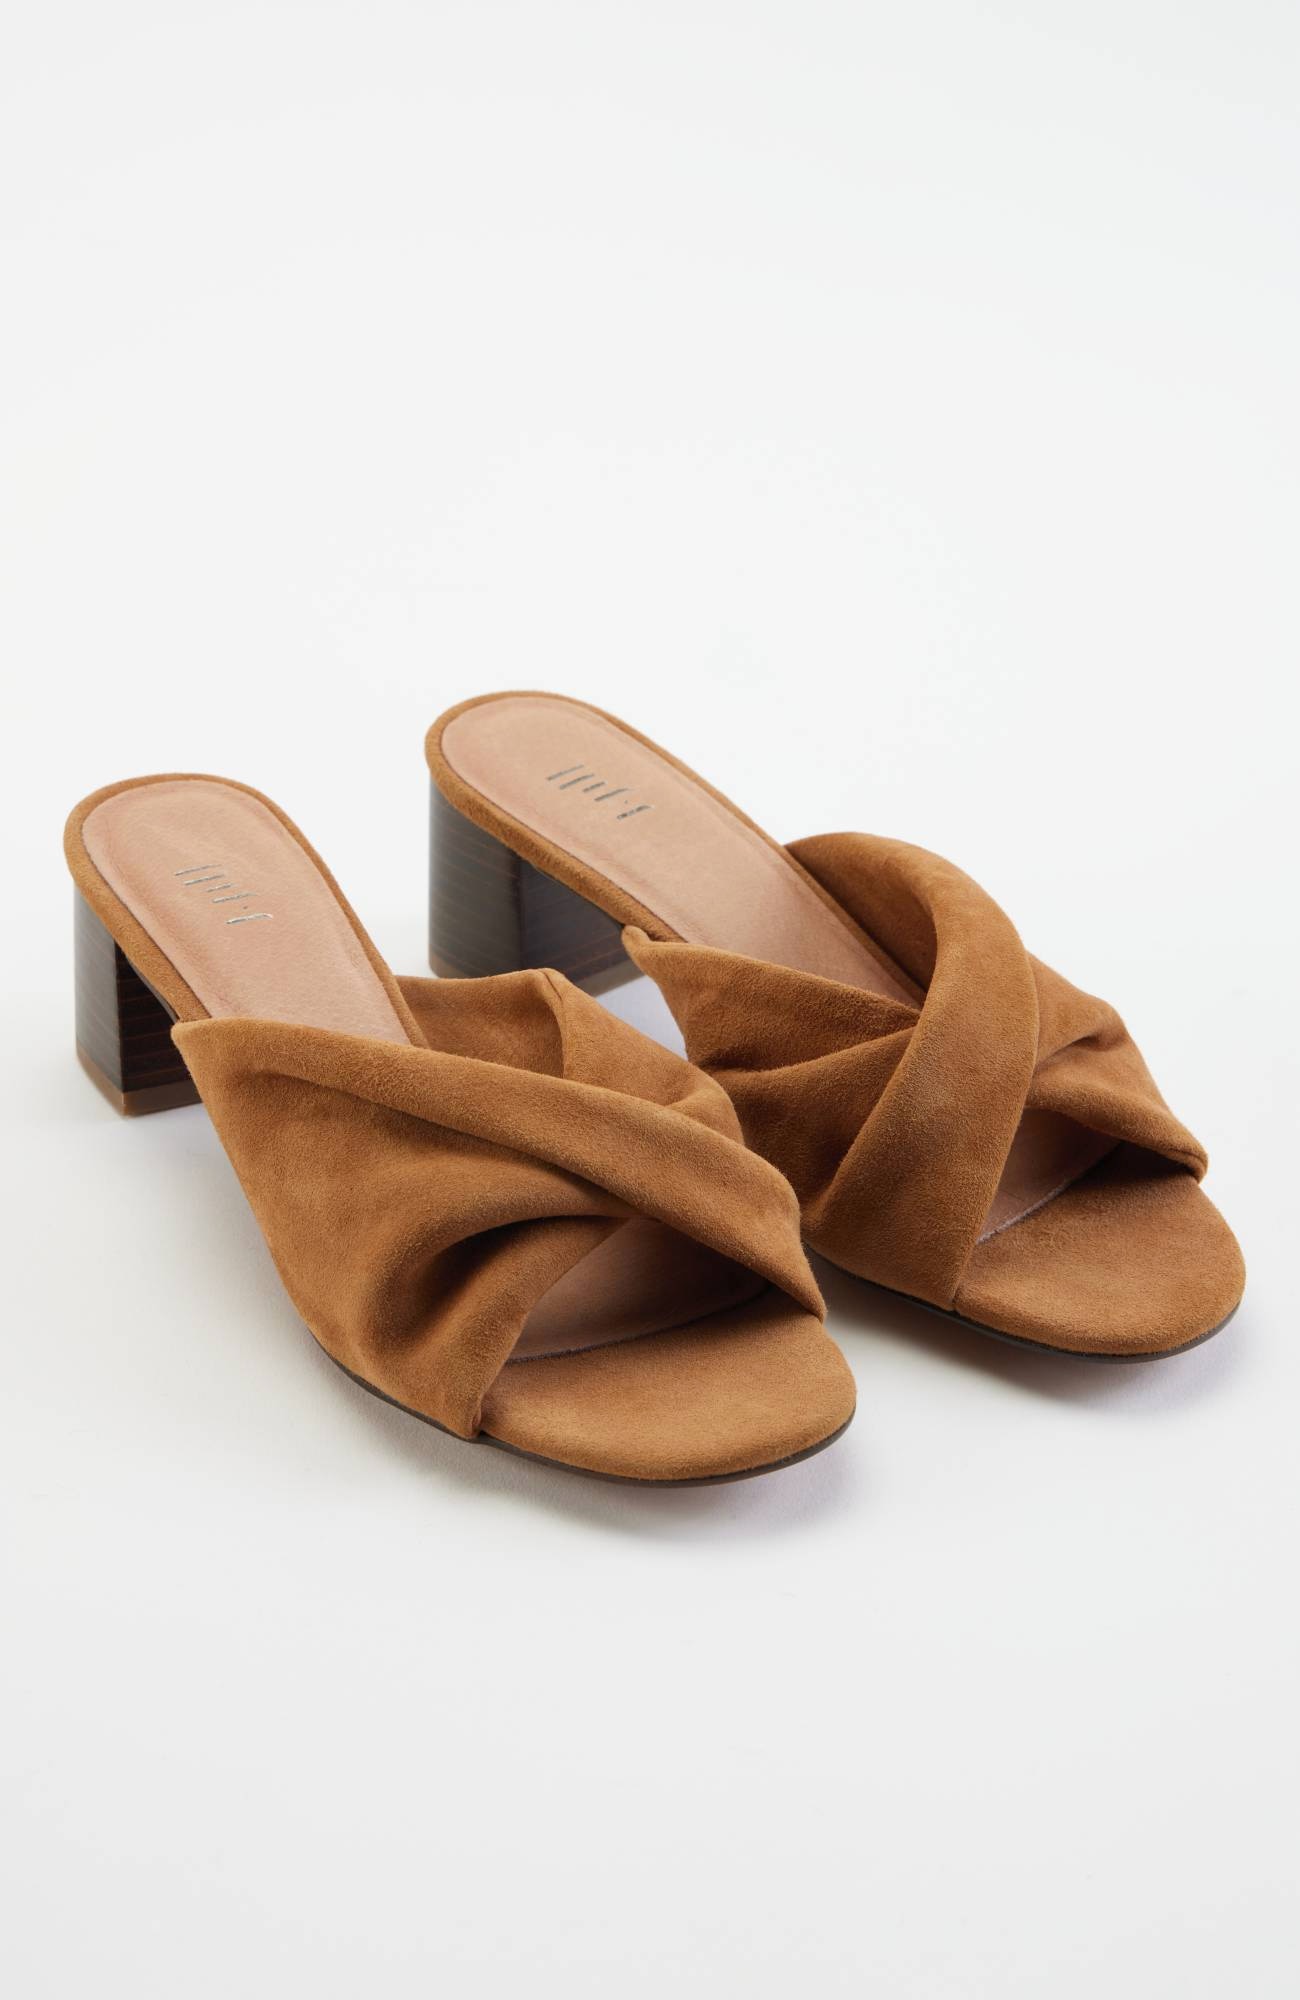 Celeste Block-Heel Sandals